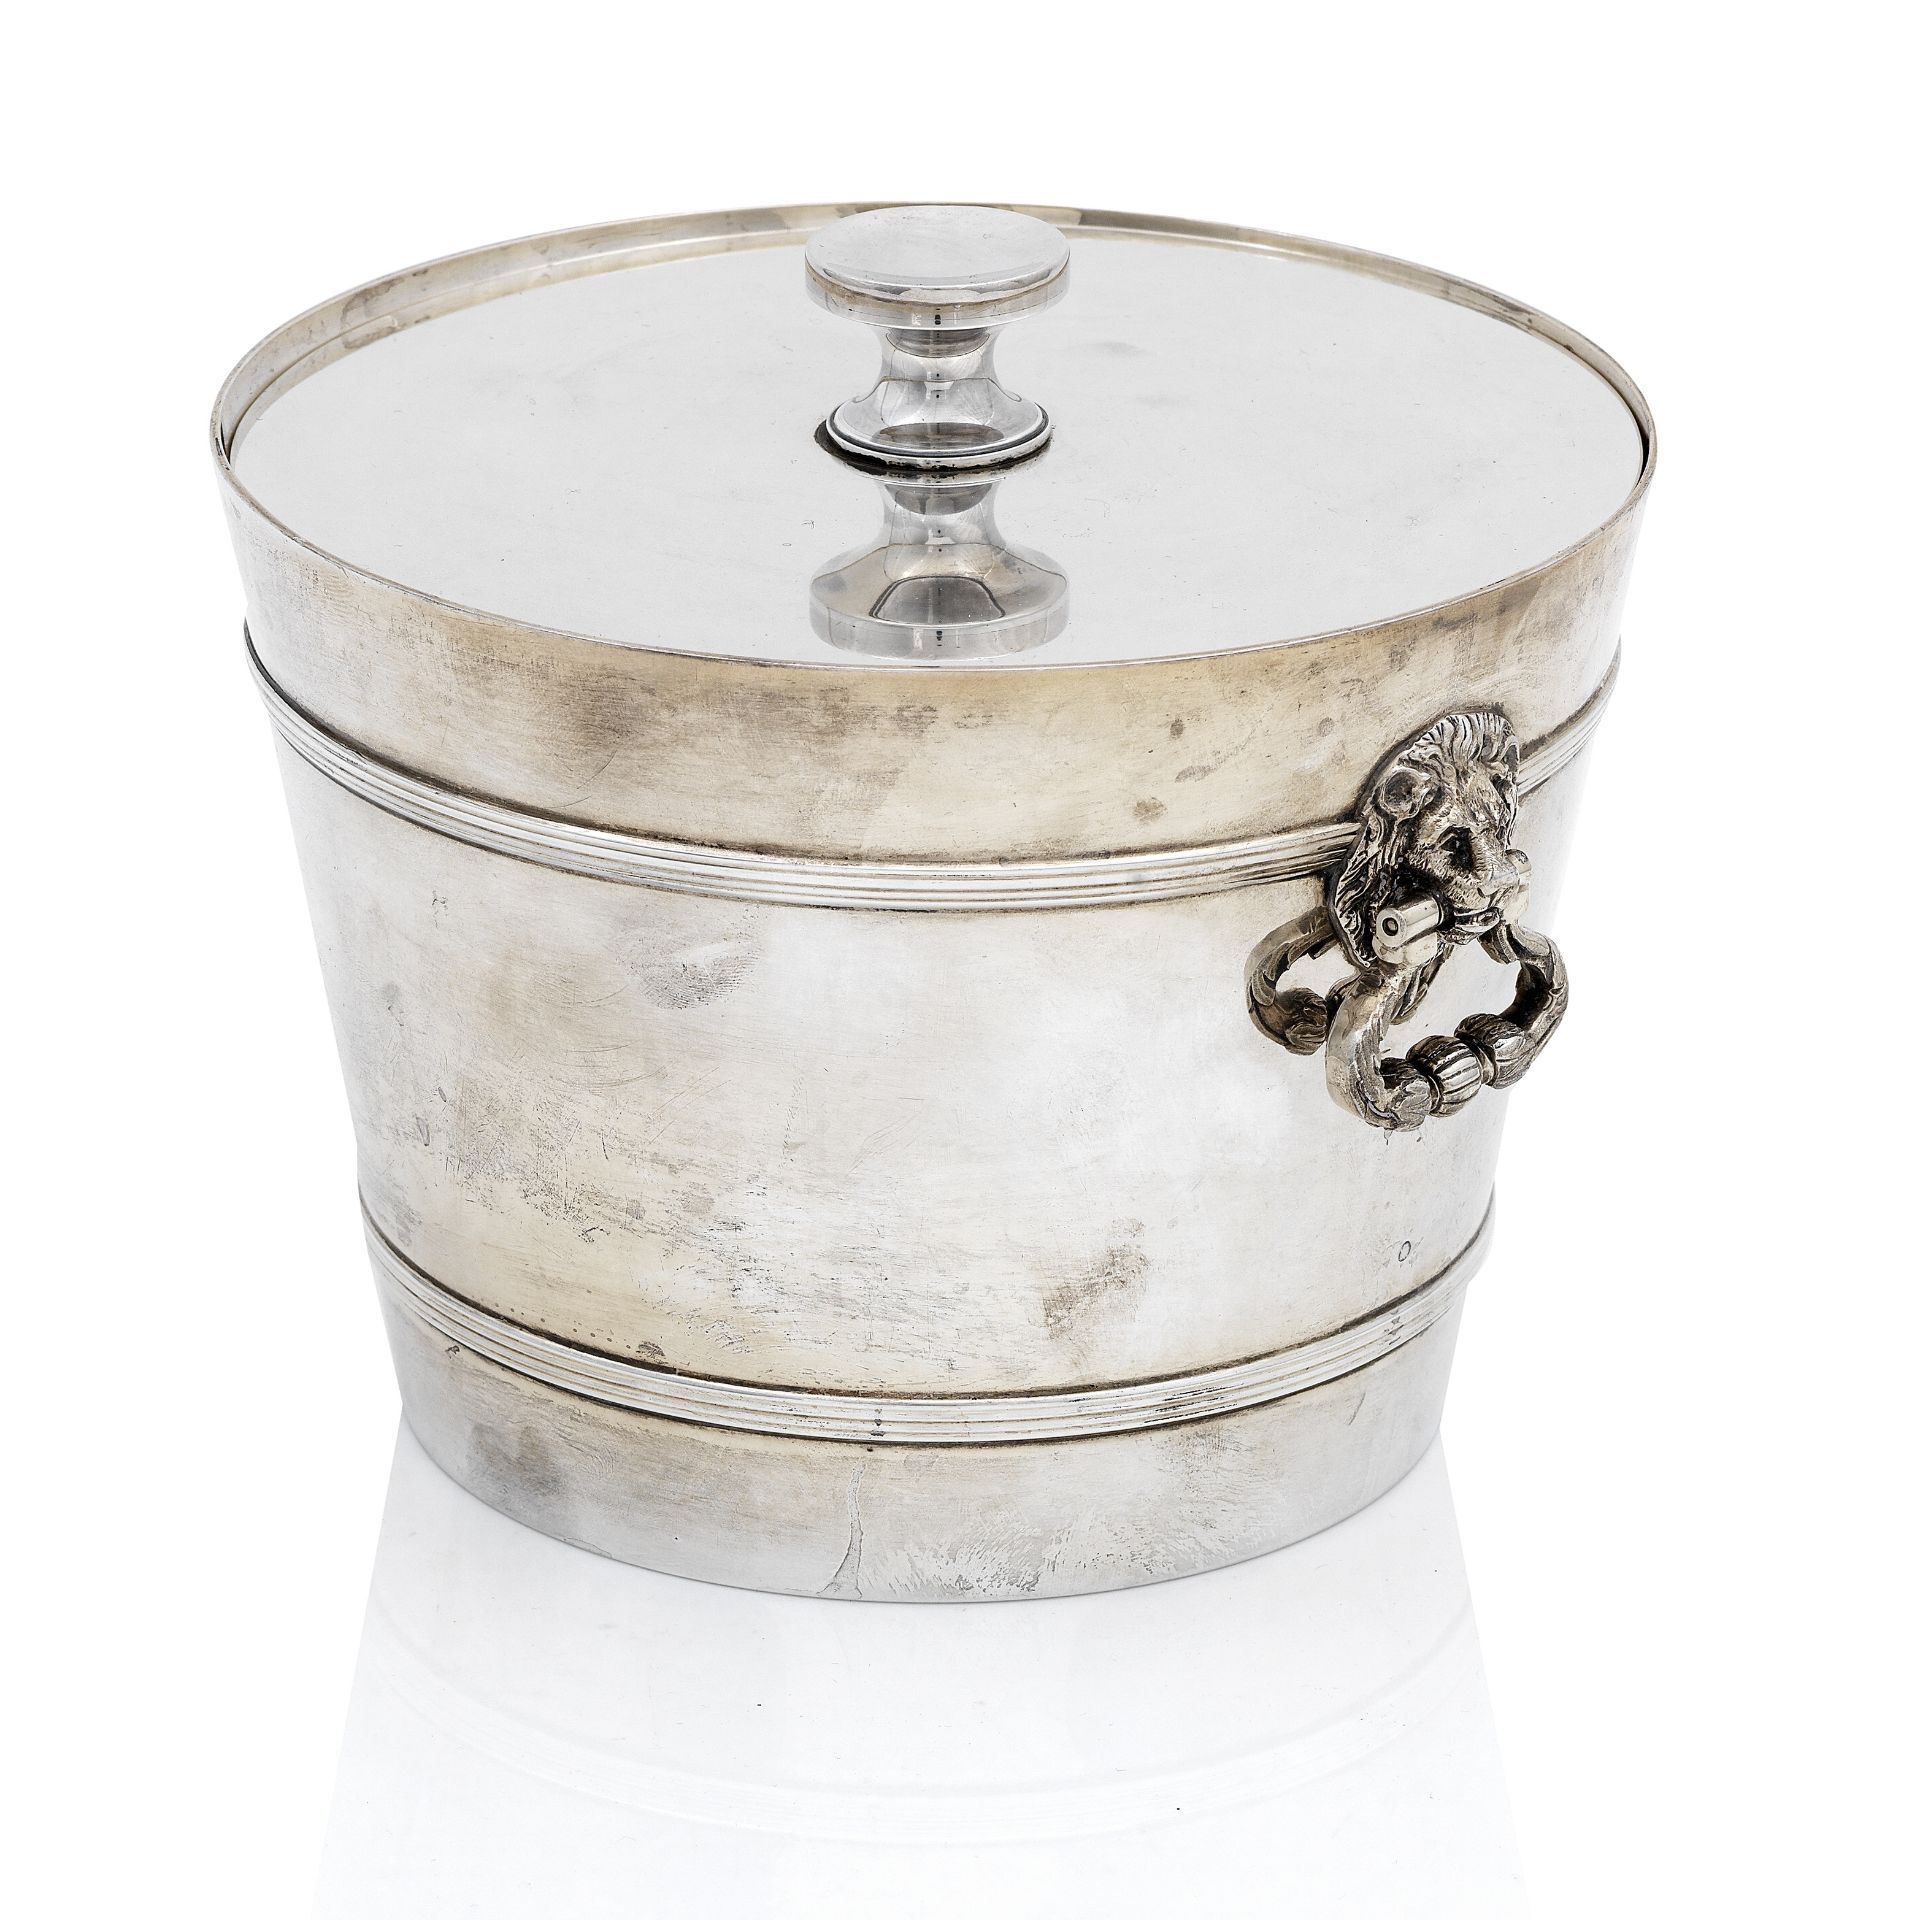 A silver ice bucket by Asprey & Co., London, 1967